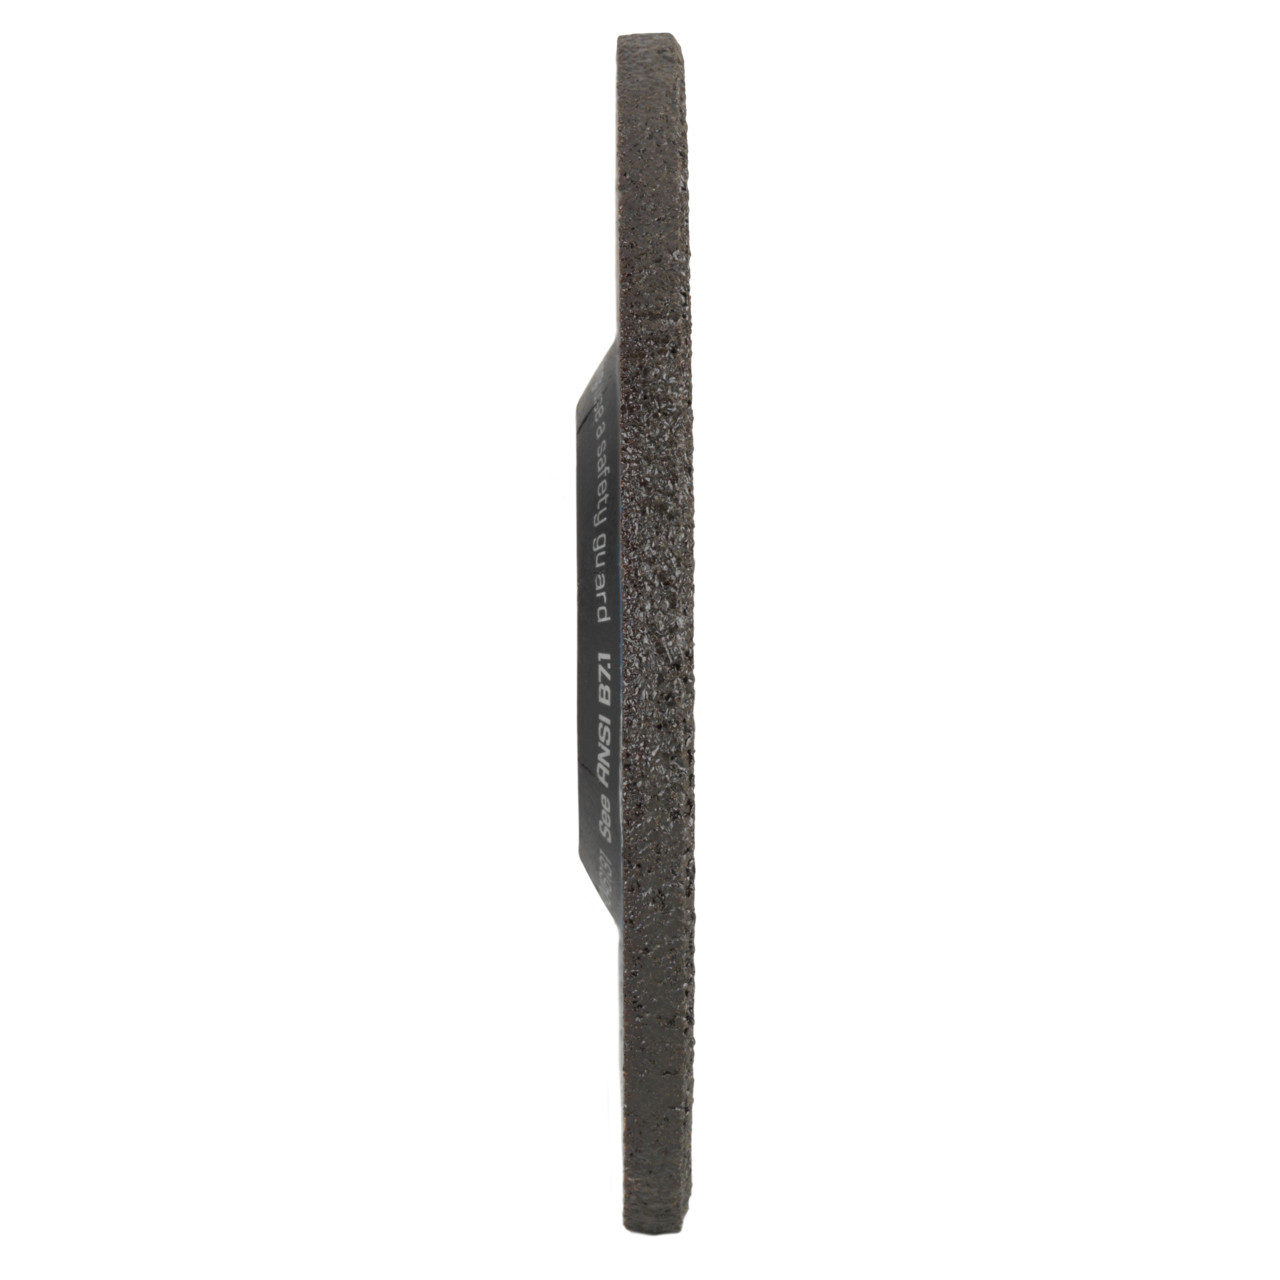 TYROLIT slijpschijf DxUxH 178x8x22,23 2in1 voor staal en roestvrij staal, vorm: 27 - offset-uitvoering, Art. 34046135